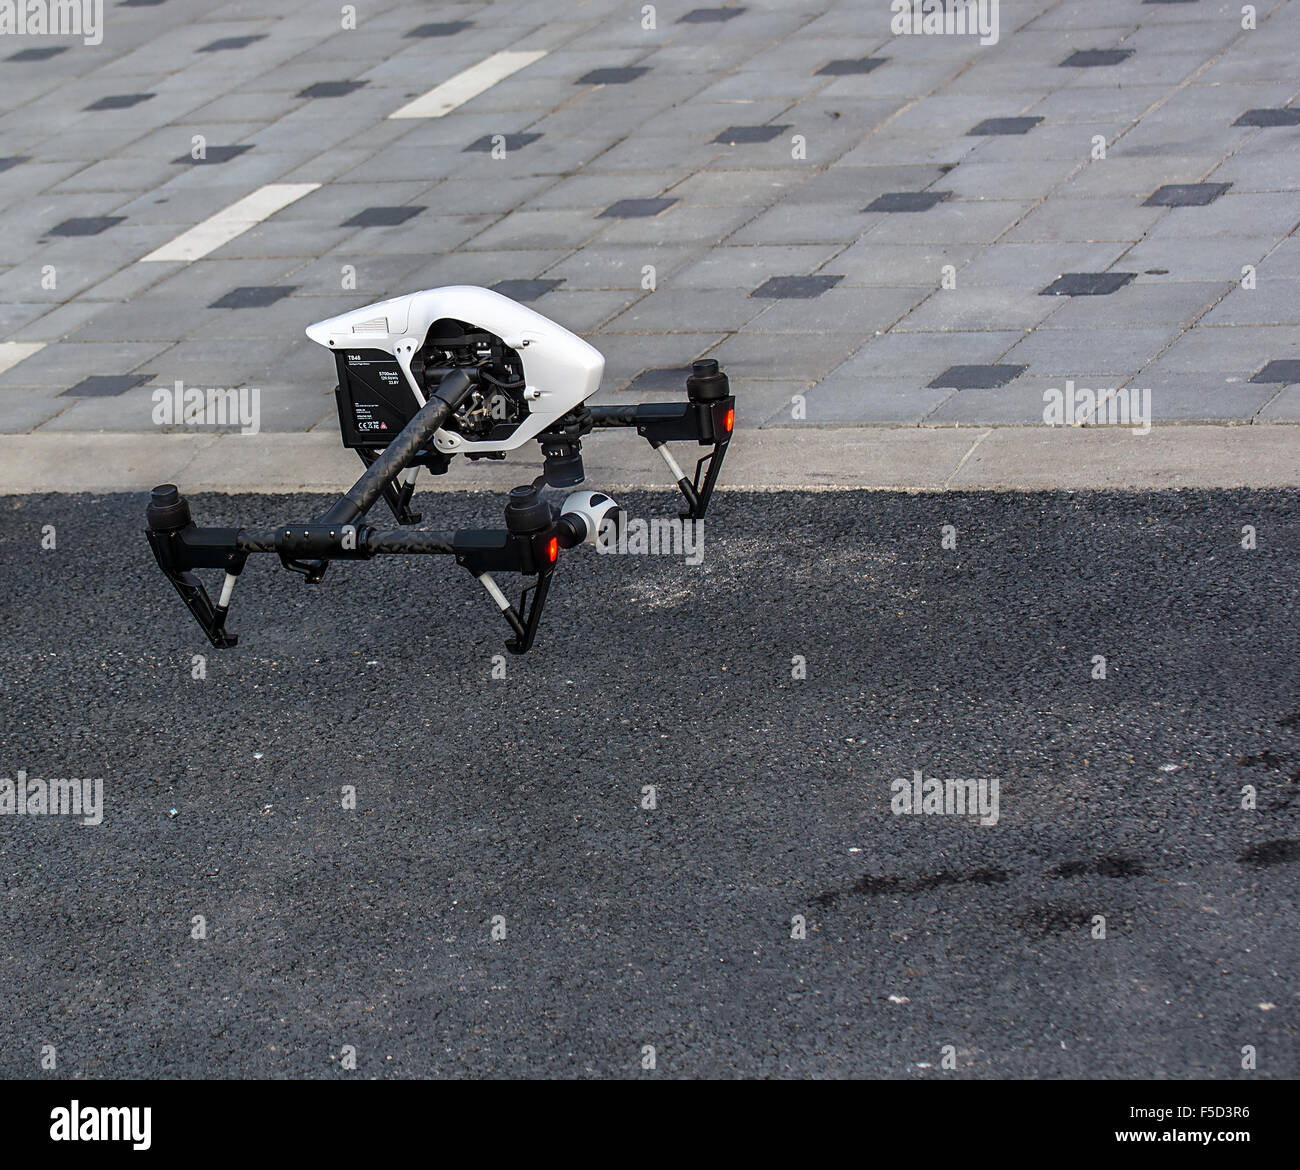 Zrenjanin, Serbia: en octubre de 2015, la imagen del Dji inspirar 1 drone quadcopter UAV que dispara vídeo 4k y 12mp imágenes fijas Foto de stock